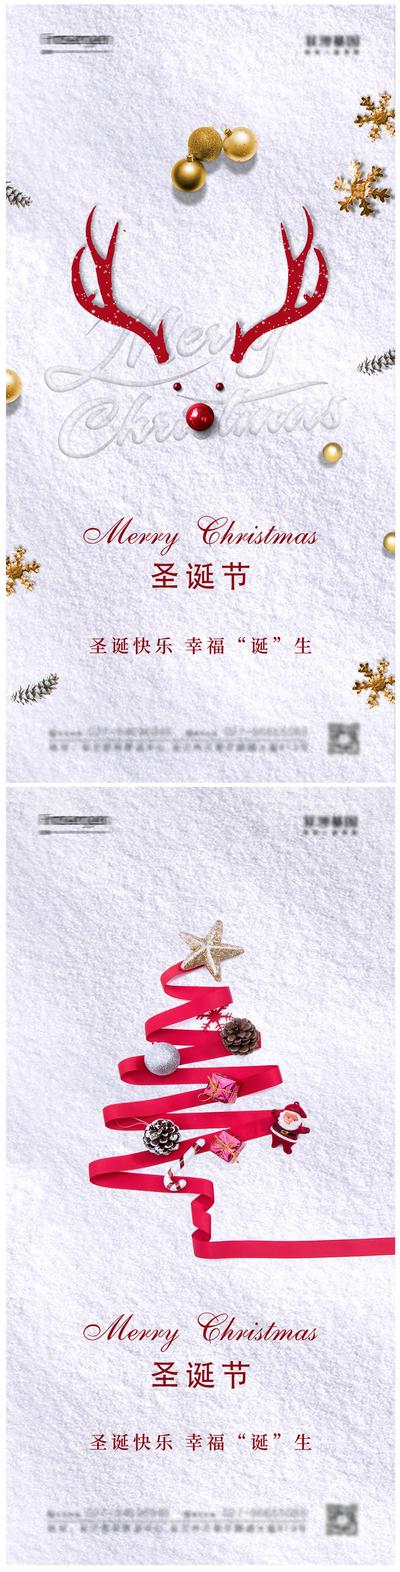 南门网 海报 公历节日 圣诞节 创意 麋鹿 圣诞树 雪地 系列